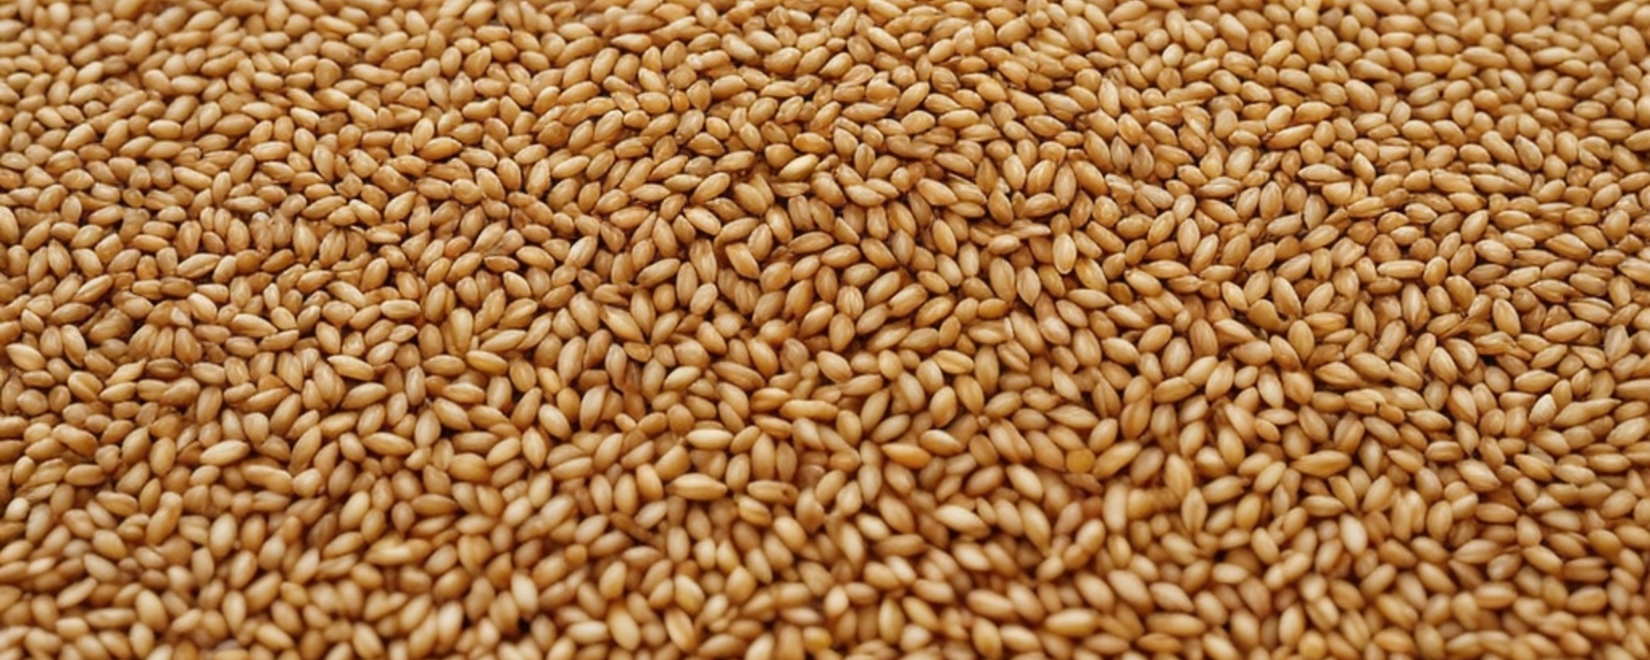 Потенциал Казахстана: огромные запасы пшеницы - более 12 млн тонн